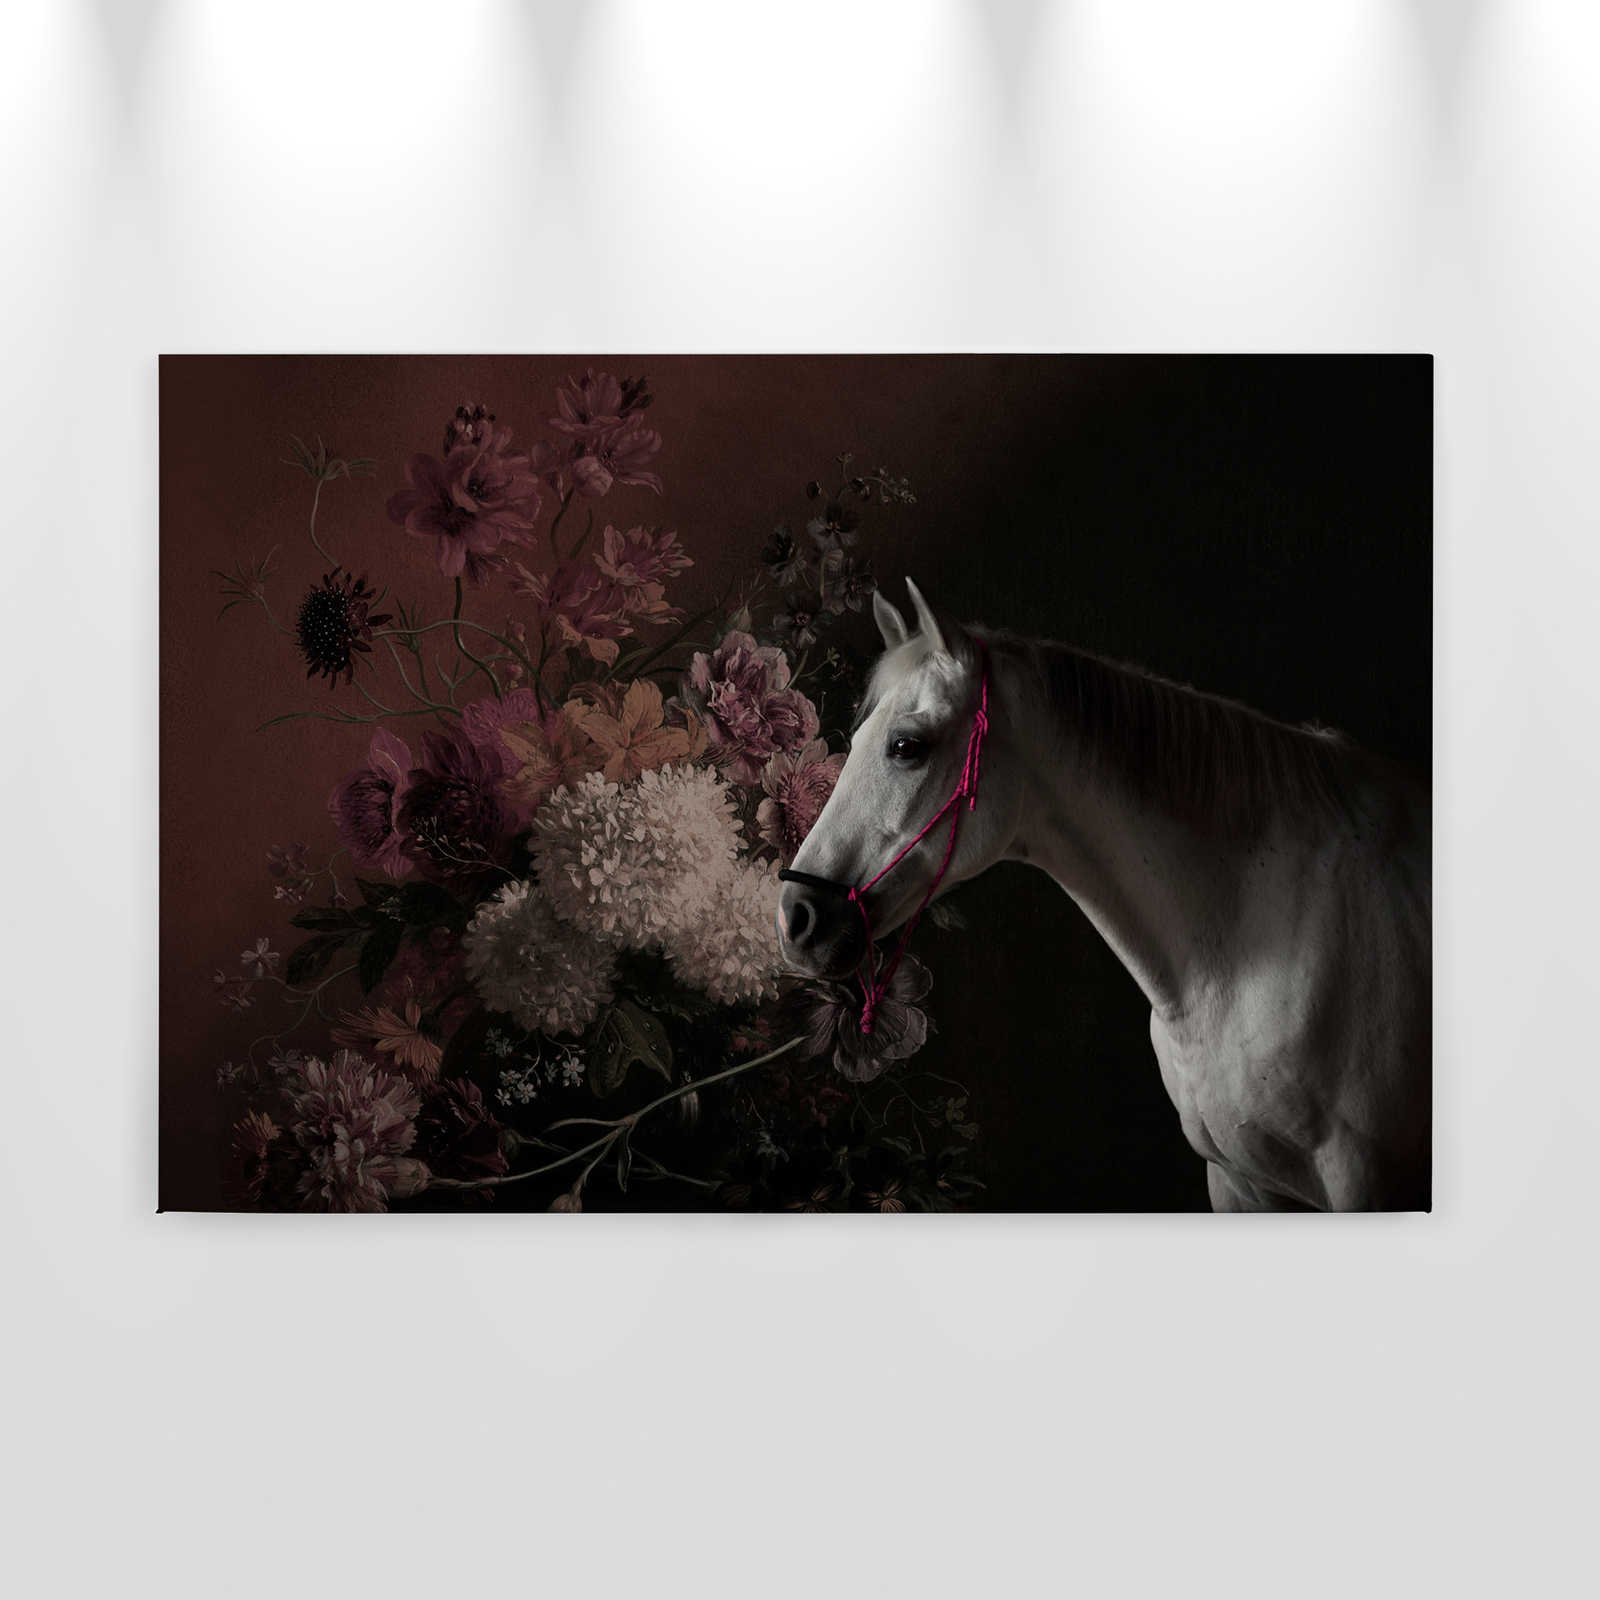             Leinwandbild Pferde Portrait mit Blumen – 0,90 m x 0,60 m
        